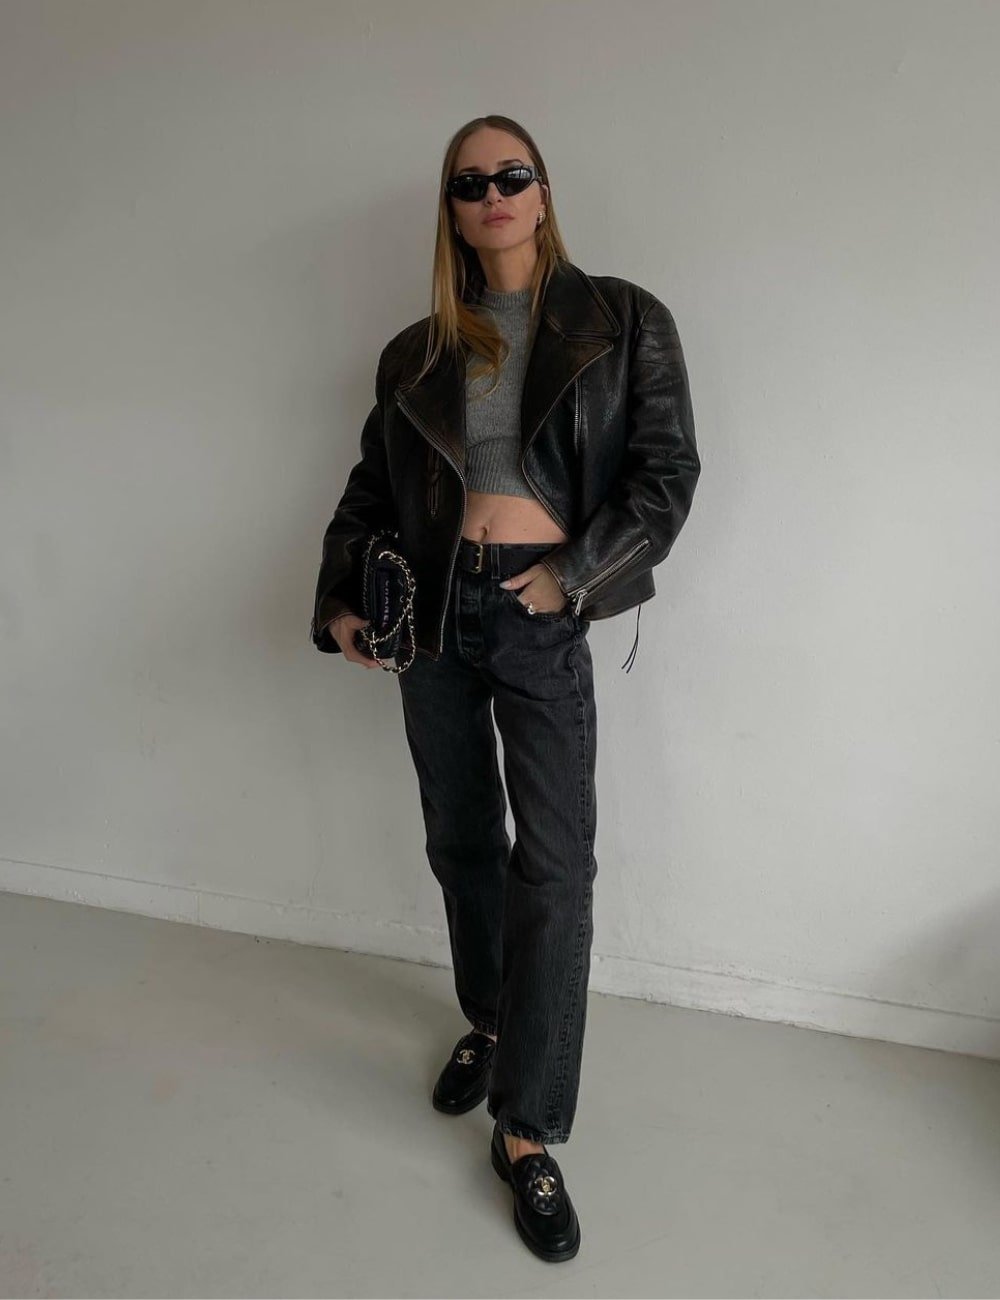 Pernille Teisbaek - calça jeans, cropped cinza, jaqueta e mocassim - looks com mocassim - Outono - em pé em uma sala usando óculos escuros - https://stealthelook.com.br